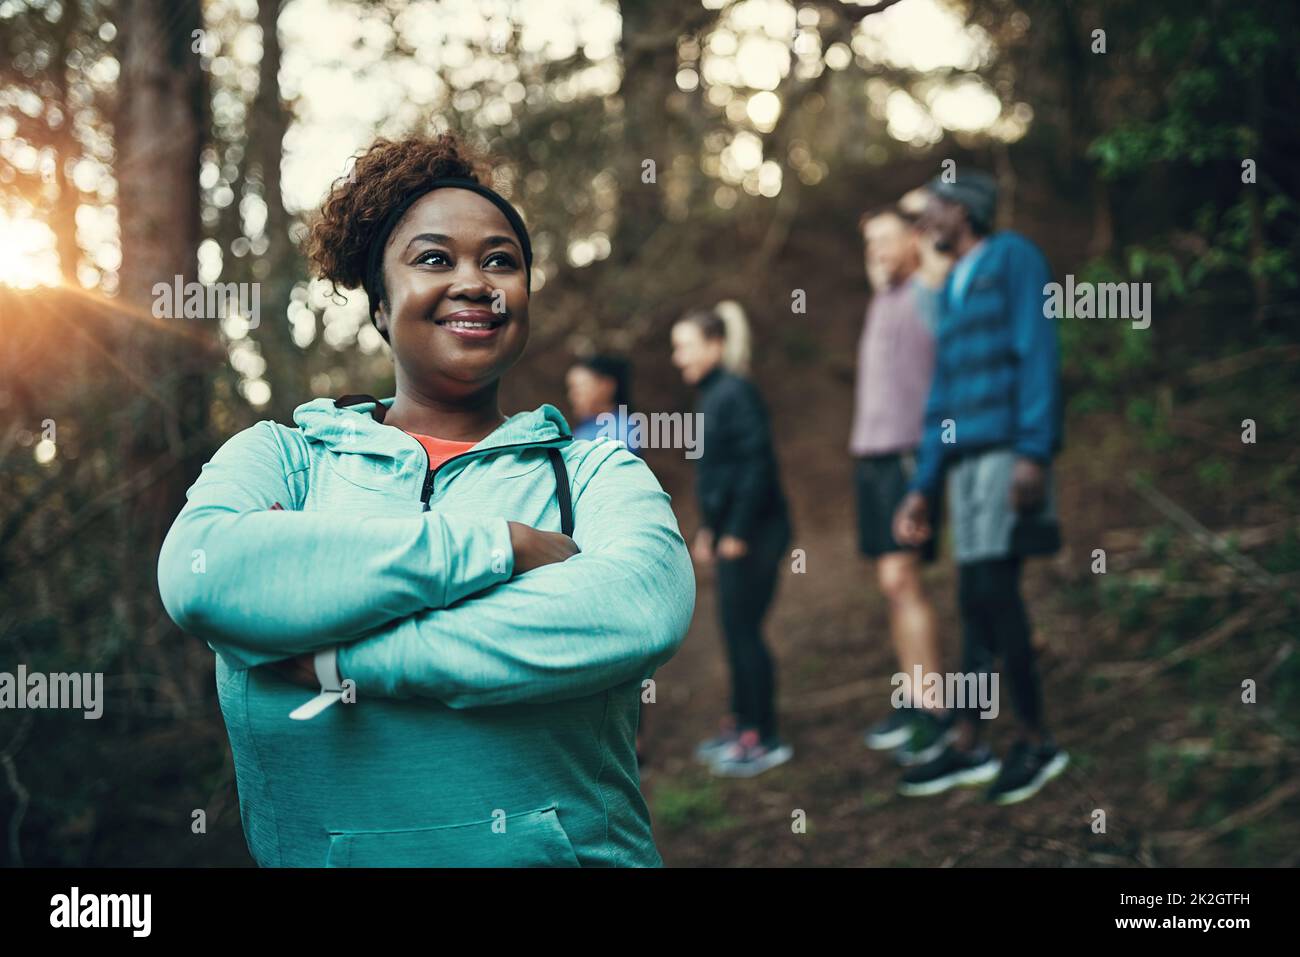 La foresta è un luogo ideale per allenarsi. Ripresa ritagliata di una giovane donna sportiva pronta ad allenarsi mentre aspetta i suoi amici sullo sfondo nella foresta. Foto Stock